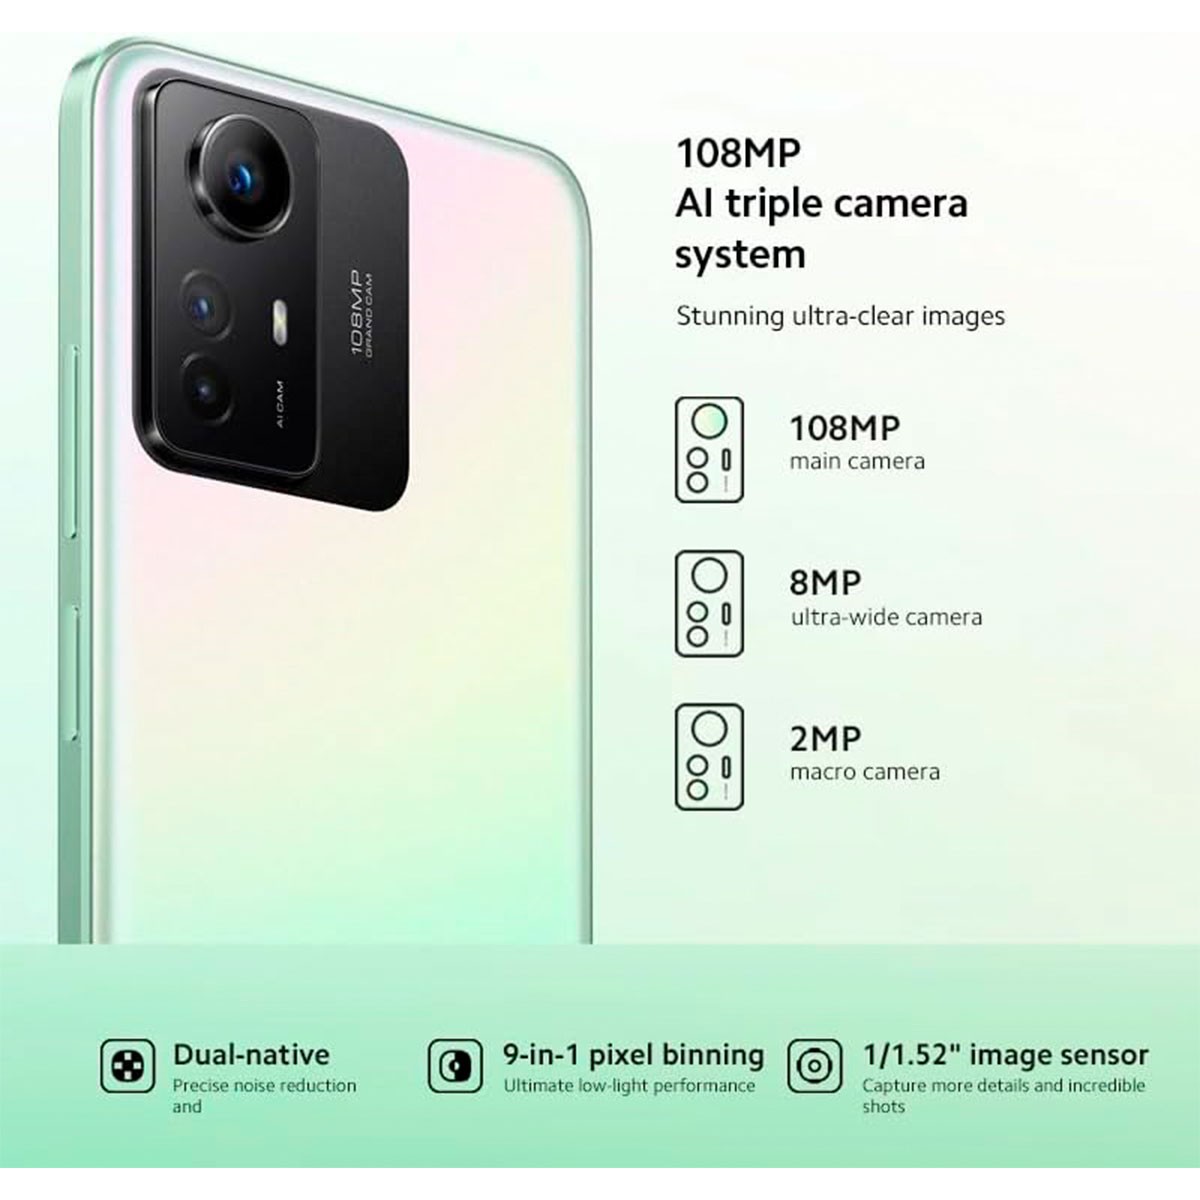 Xiaomi 12S Ultra terá câmera com sensor de 1 polegada da Sony